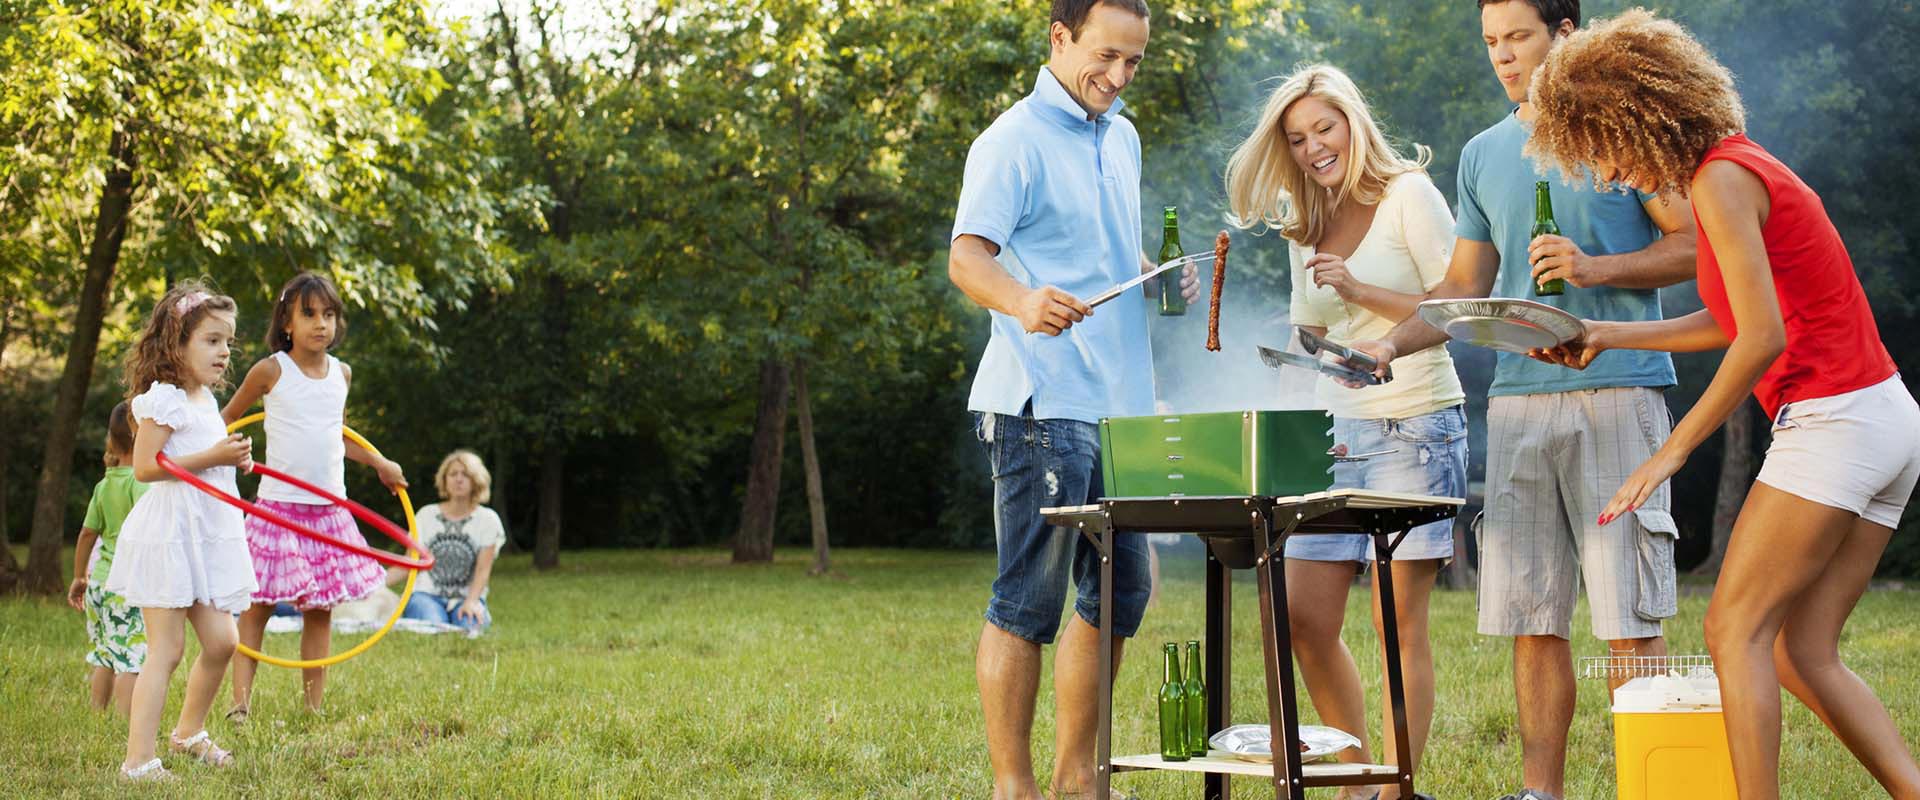 Проводи больше времени с семьей. Семья на пикнике. Семья в саду. Пикник с друзьями на природе. Семья на даче пикник.